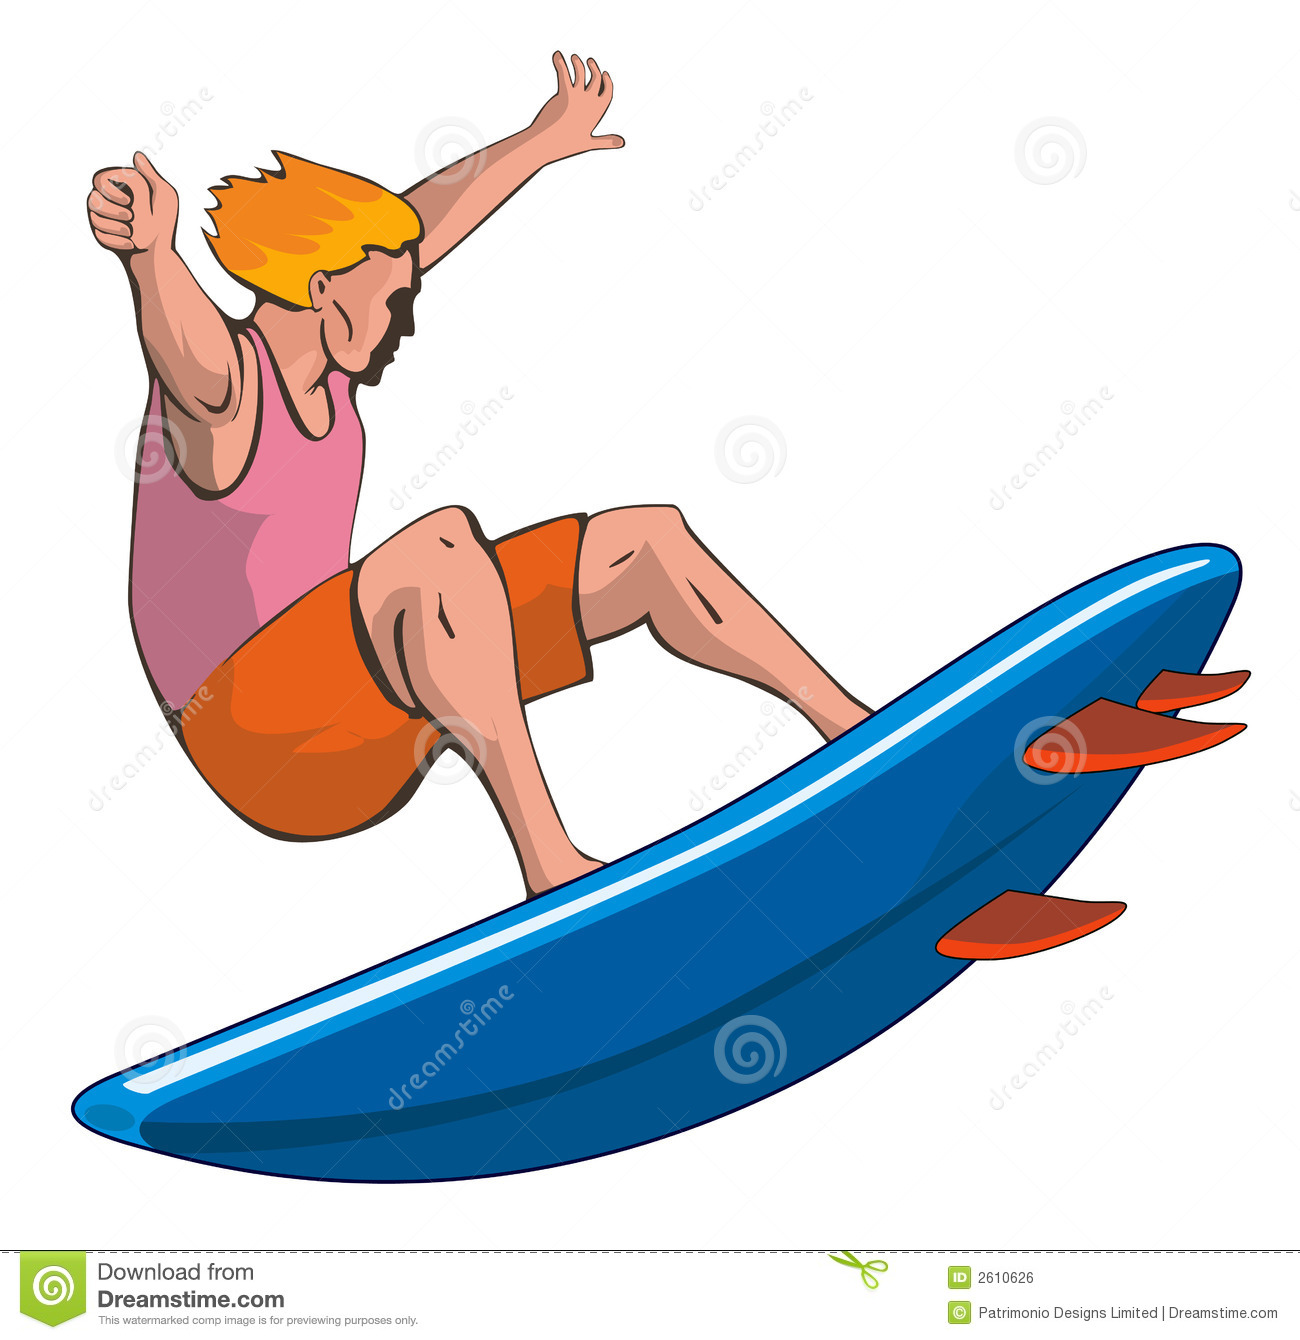 ... Boy Surfing - A happy car